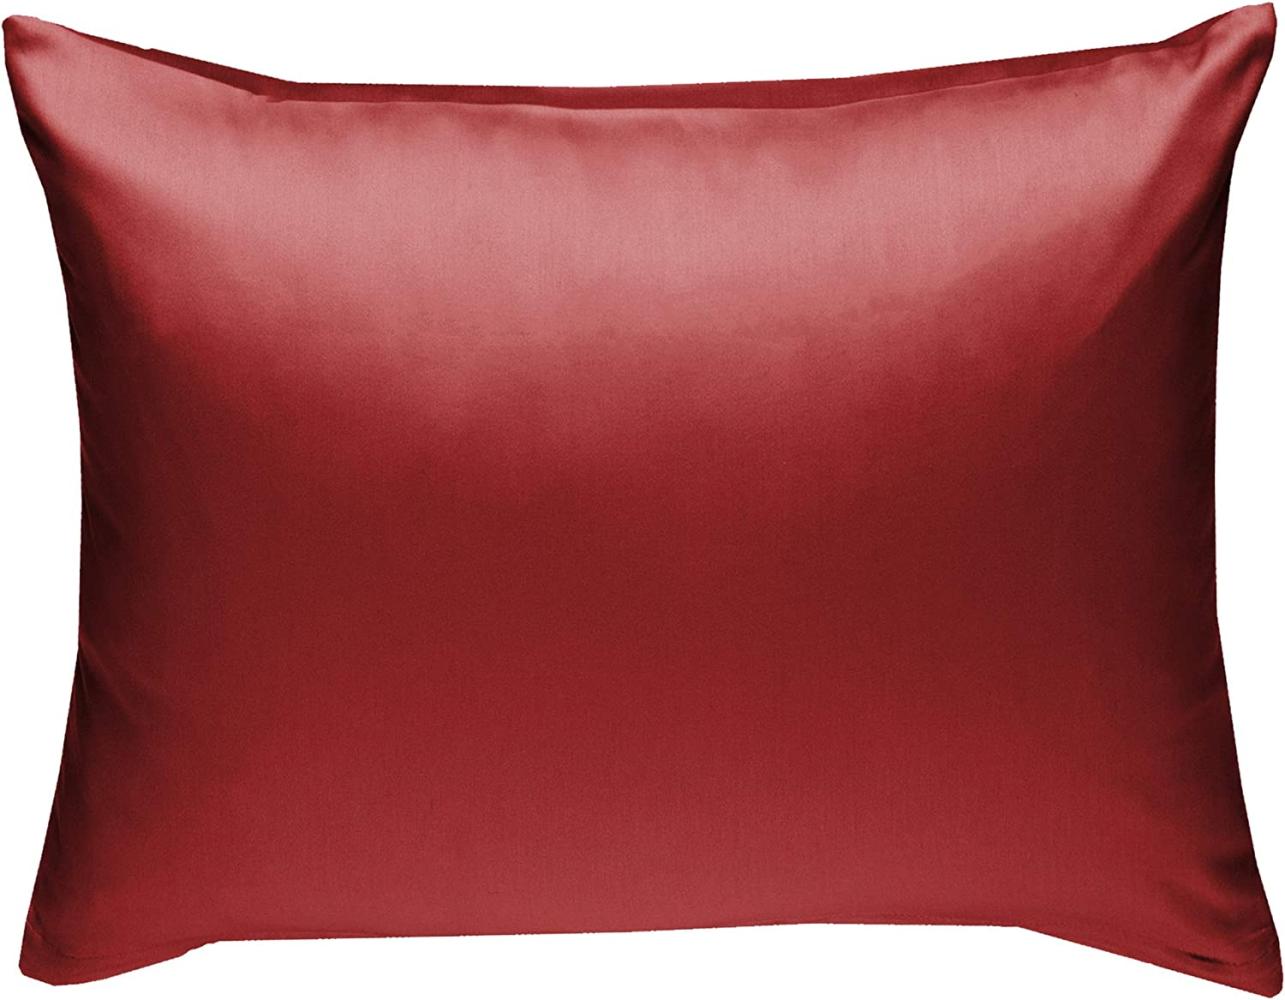 Bettwaesche-mit-Stil Mako-Satin / Baumwollsatin Bettwäsche uni / einfarbig rot Kissenbezug 70x90 cm Bild 1